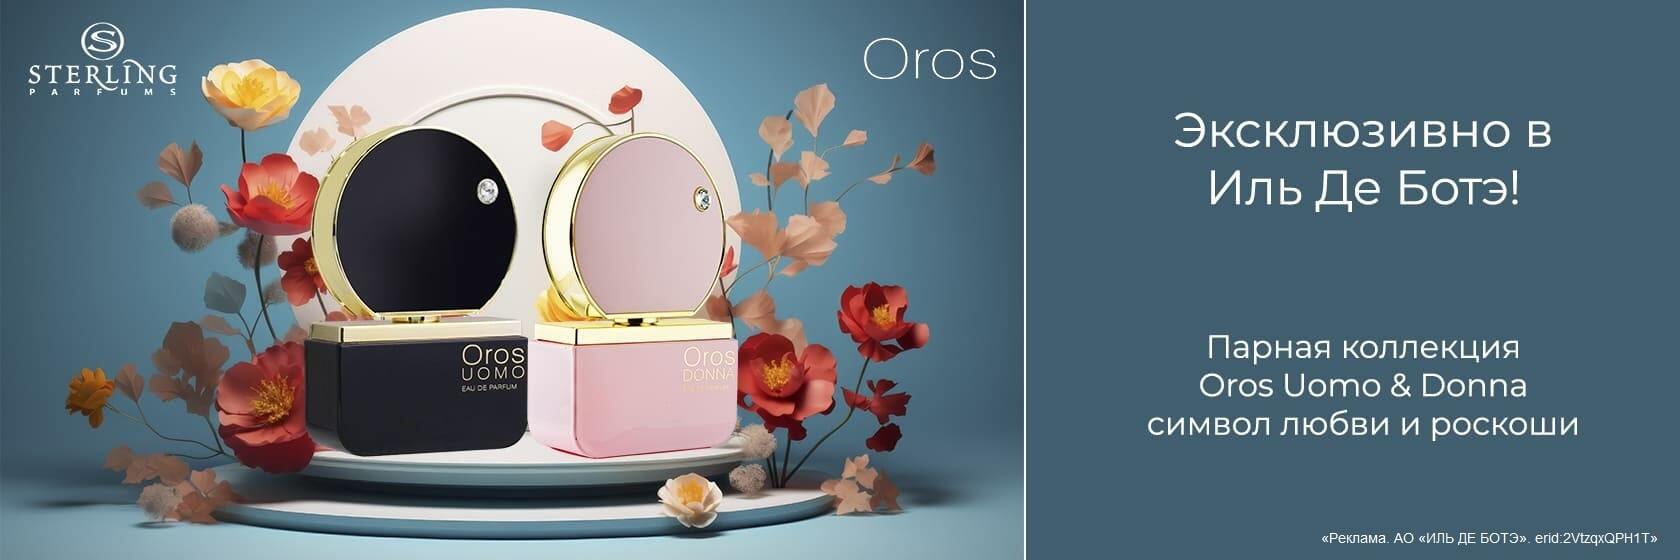 Новые ароматы OROS UOMO & DONNA от STERLING PARFUMS. Эксклюзивно в ИЛЬ ДЕ БОТЭ